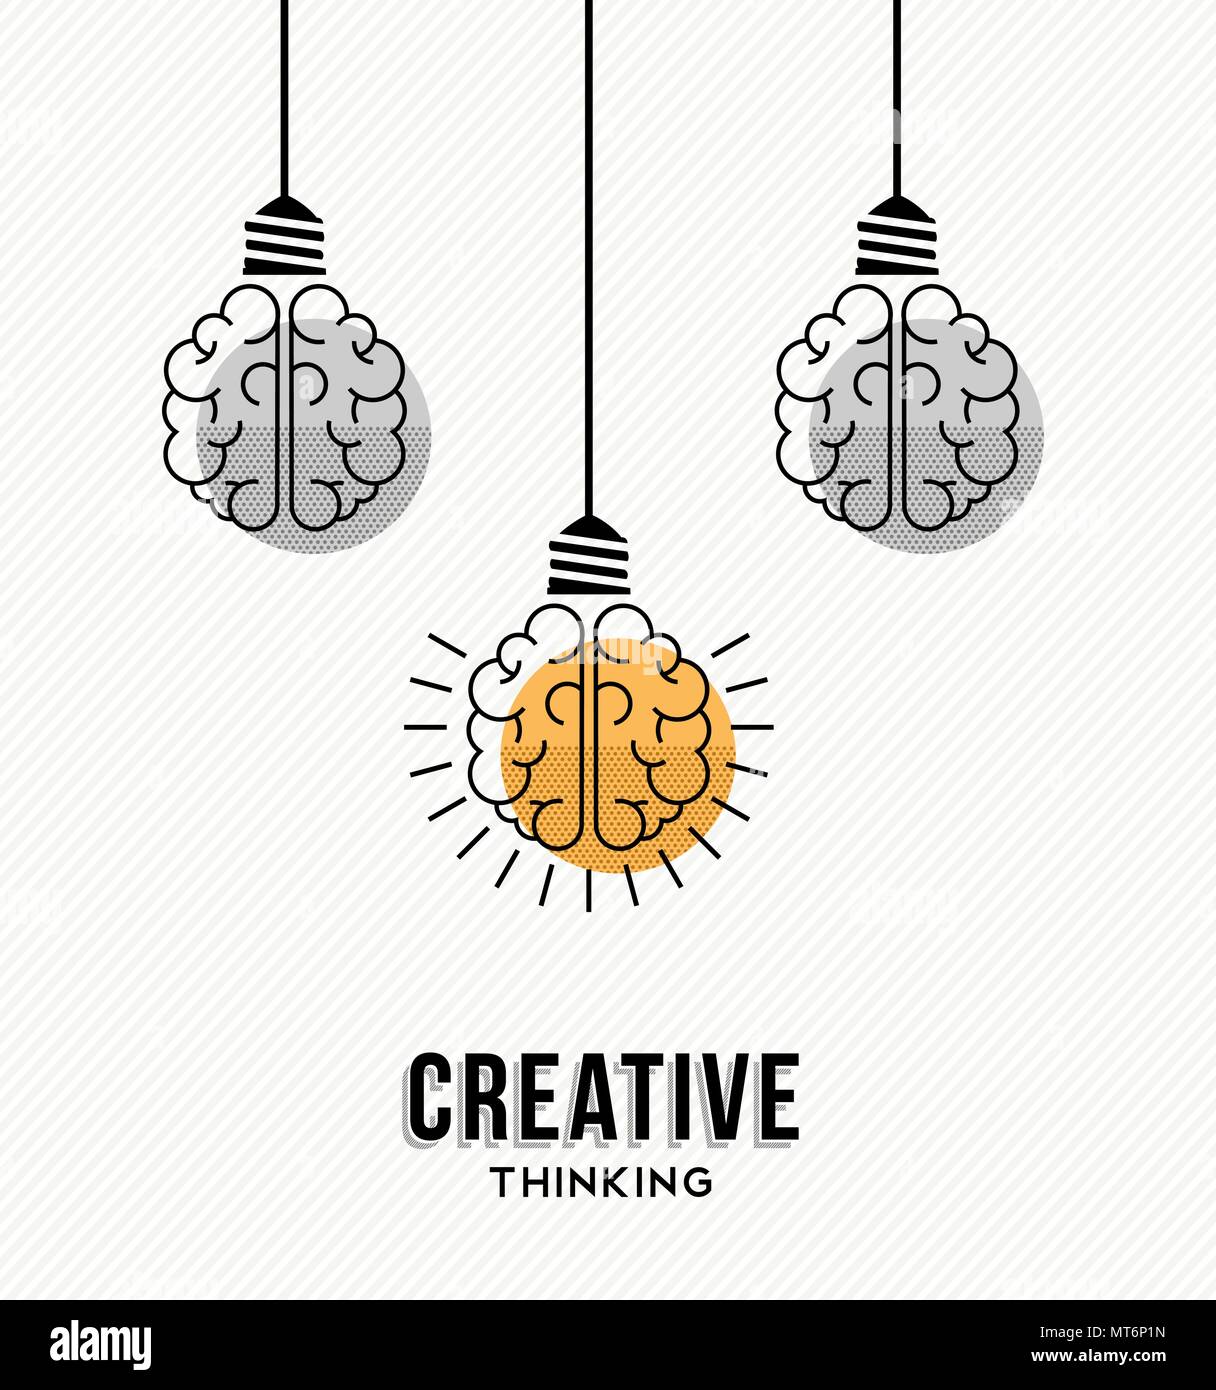 Kreatives Denken modernes Design mit menschlichen Gehirnen als bunte Lampe Licht, business Kreativität Konzept. EPS 10 Vektor. Stock Vektor